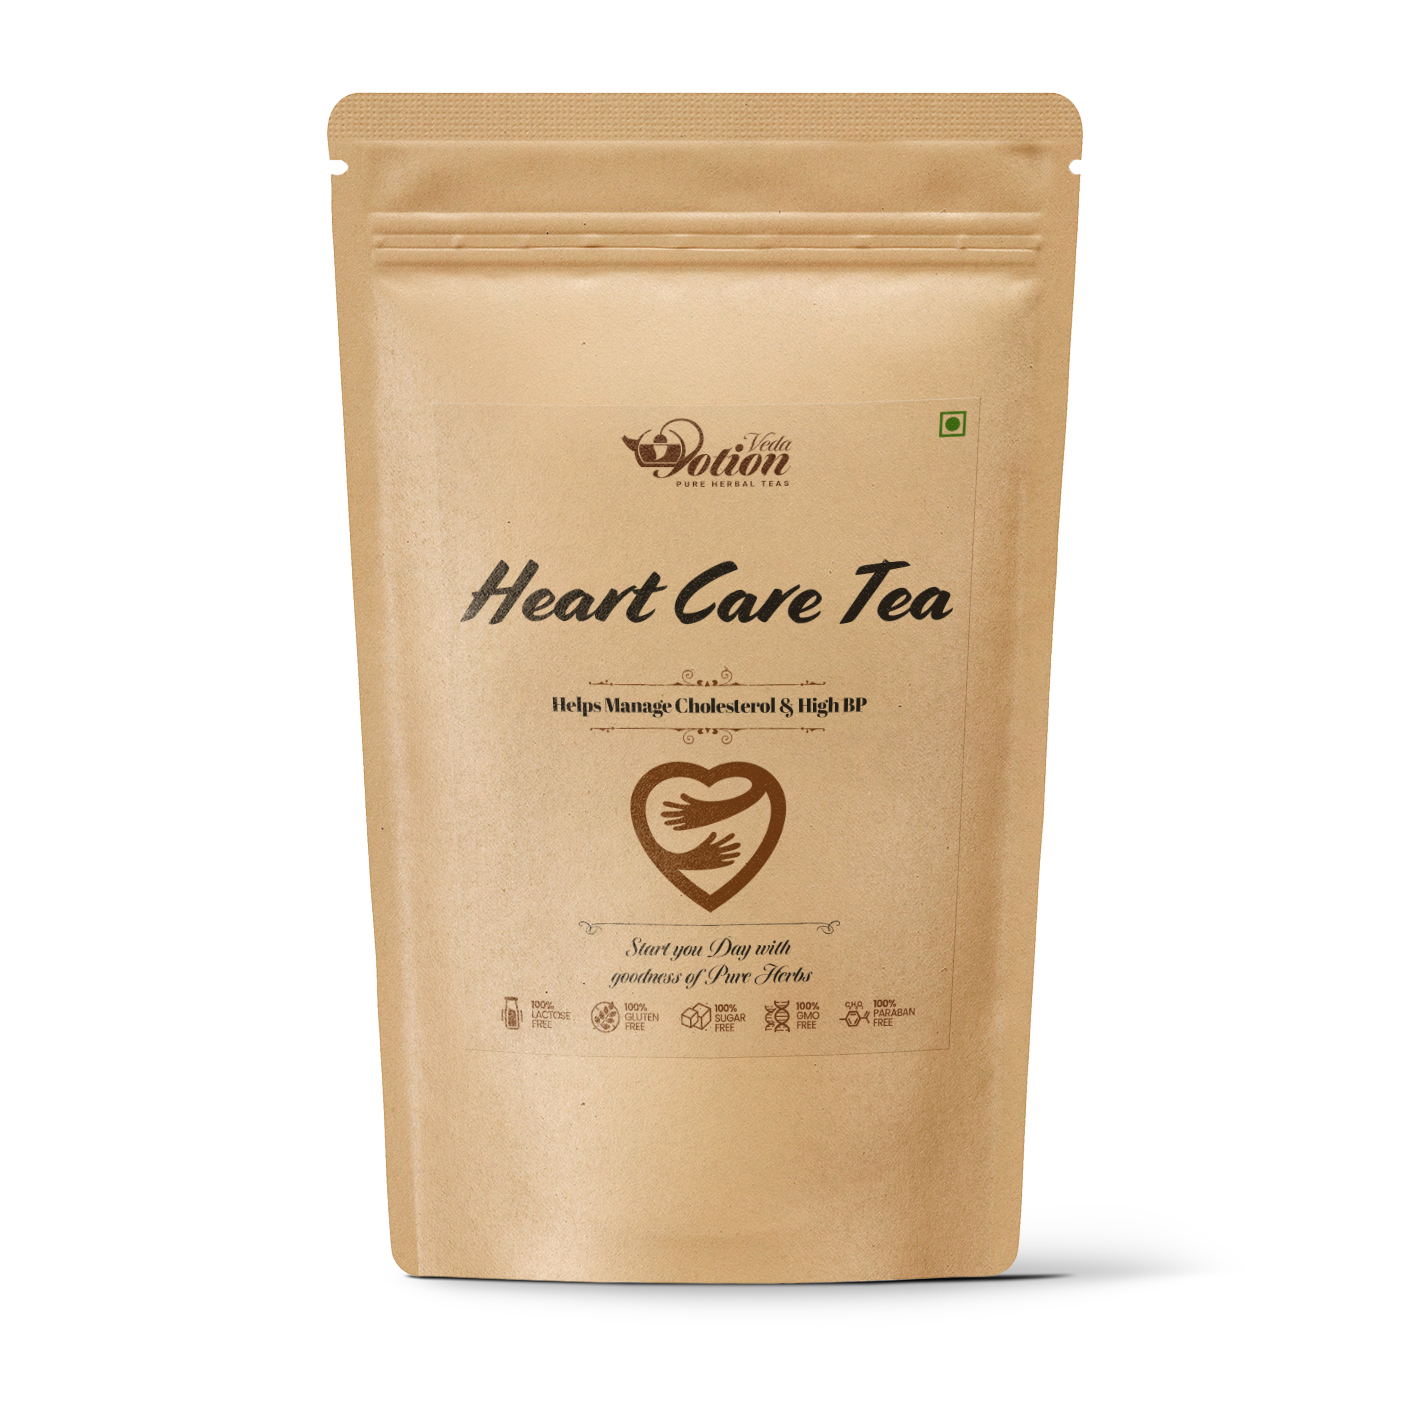 Heart Care Tea